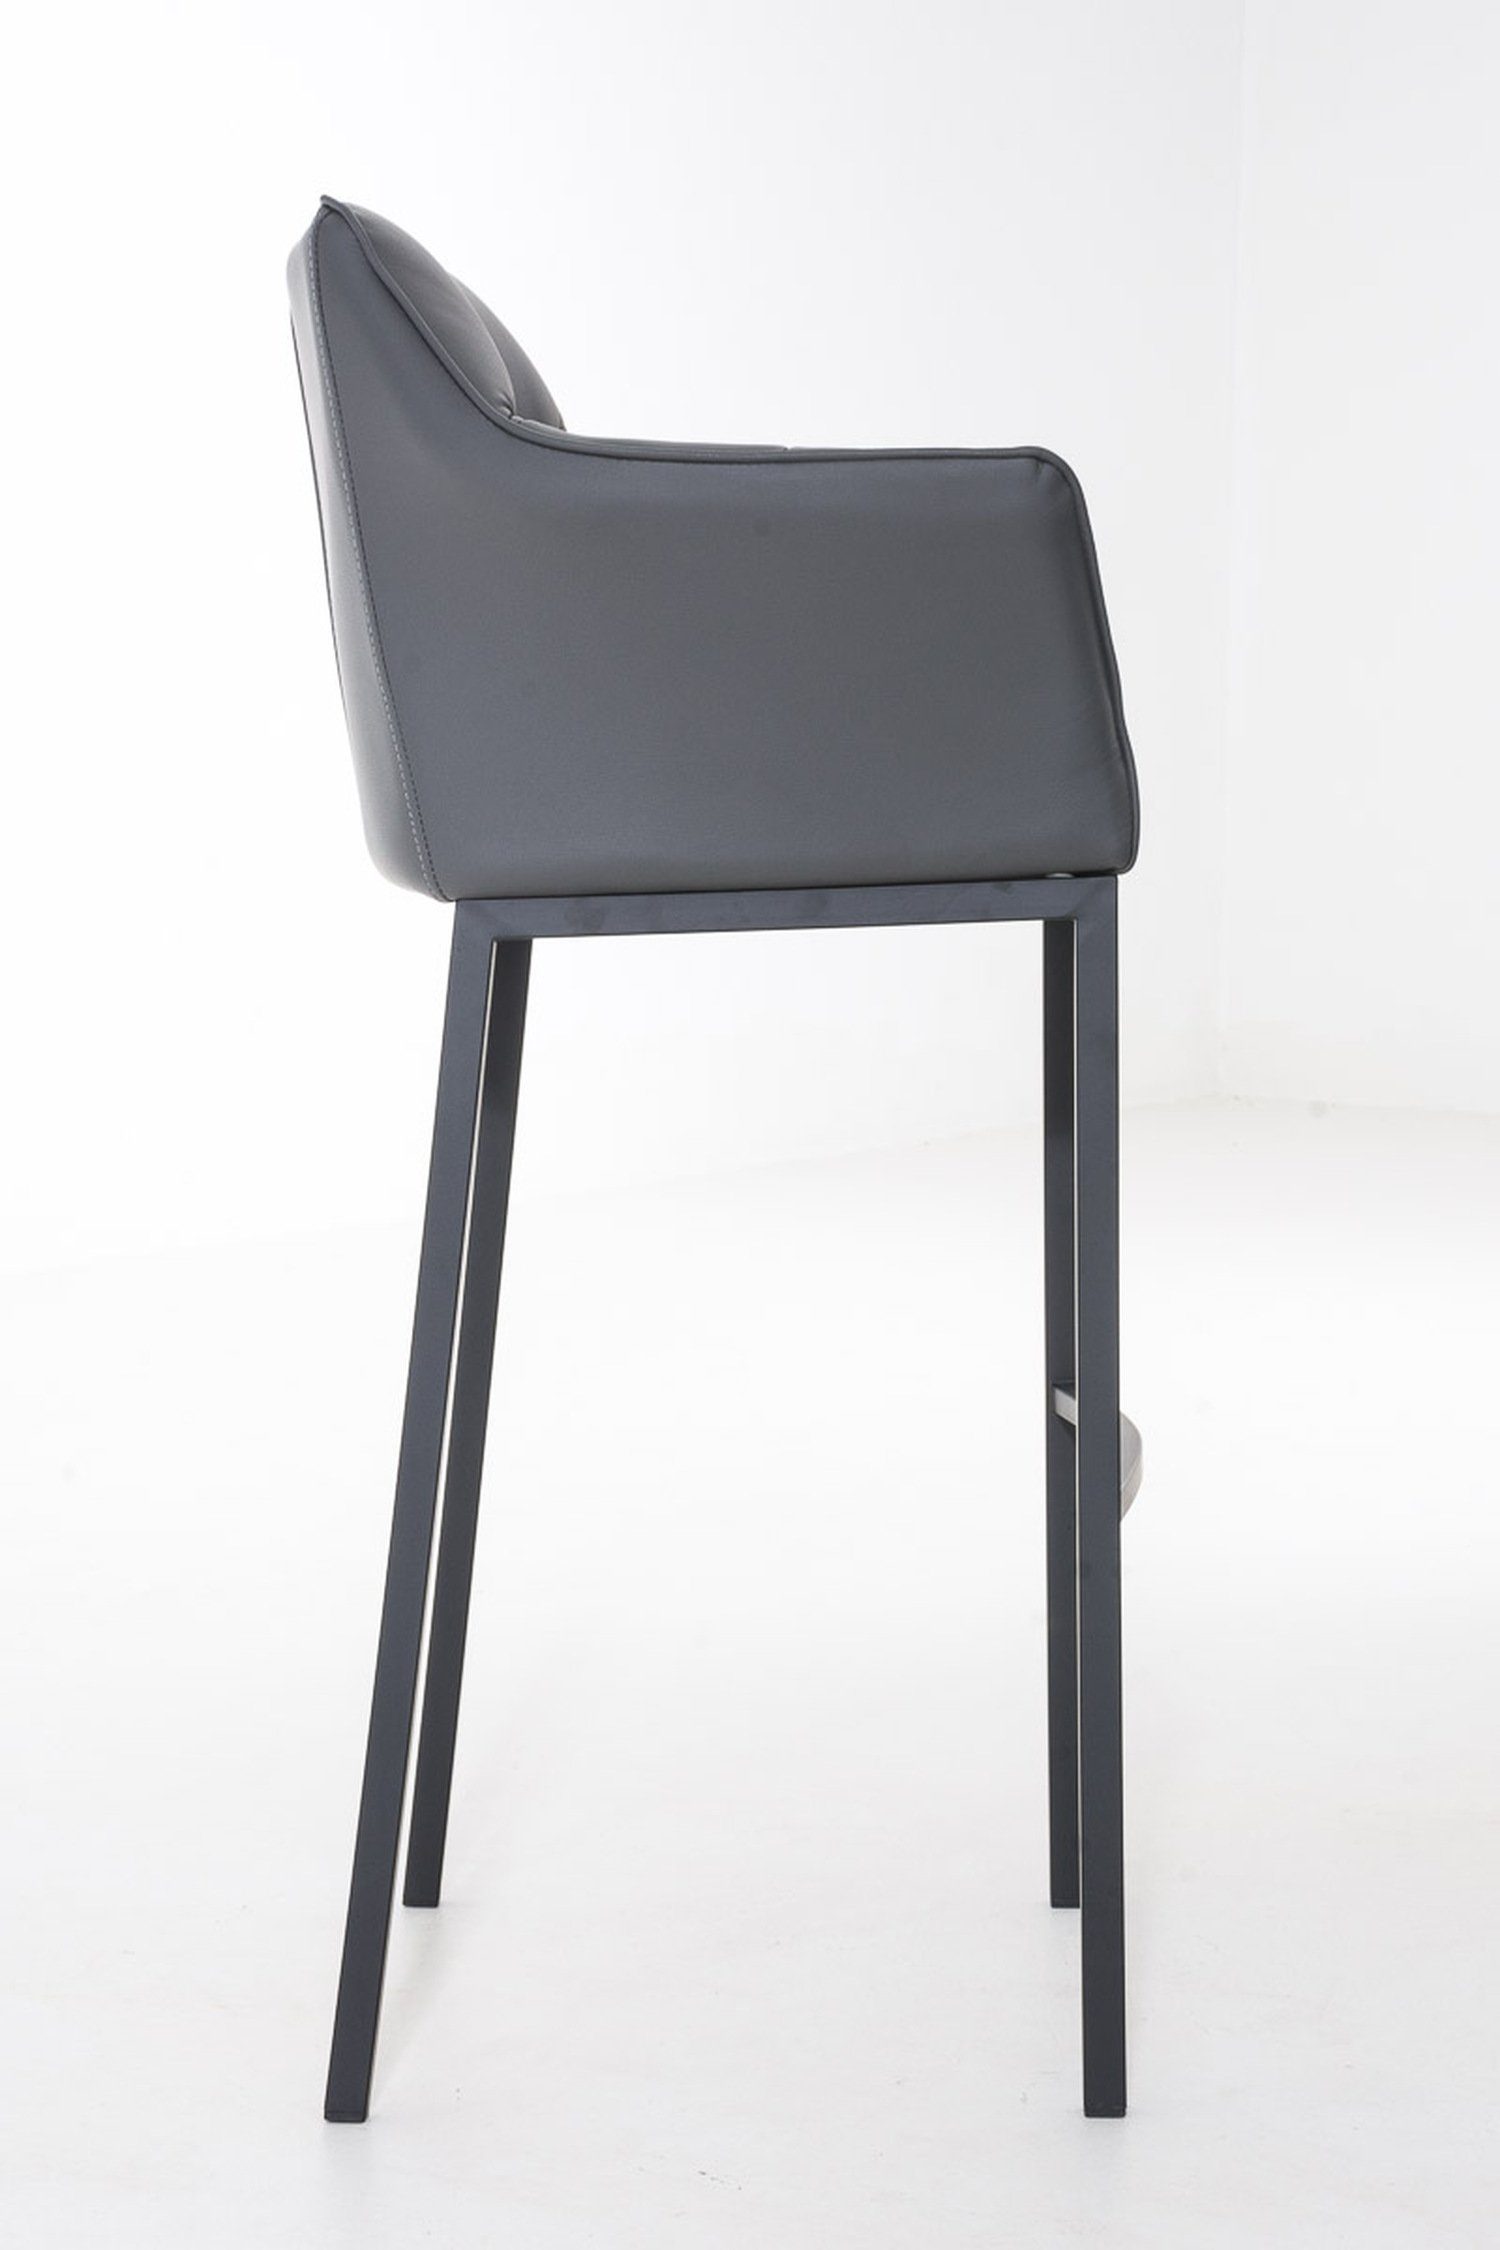 & - Fußstütze Theke Barhocker Damaso Hocker Gestell Rückenlehne für 4-Fuß schwarz TPFLiving - und Kunstleder Grau Sitzfläche: (mit Küche),